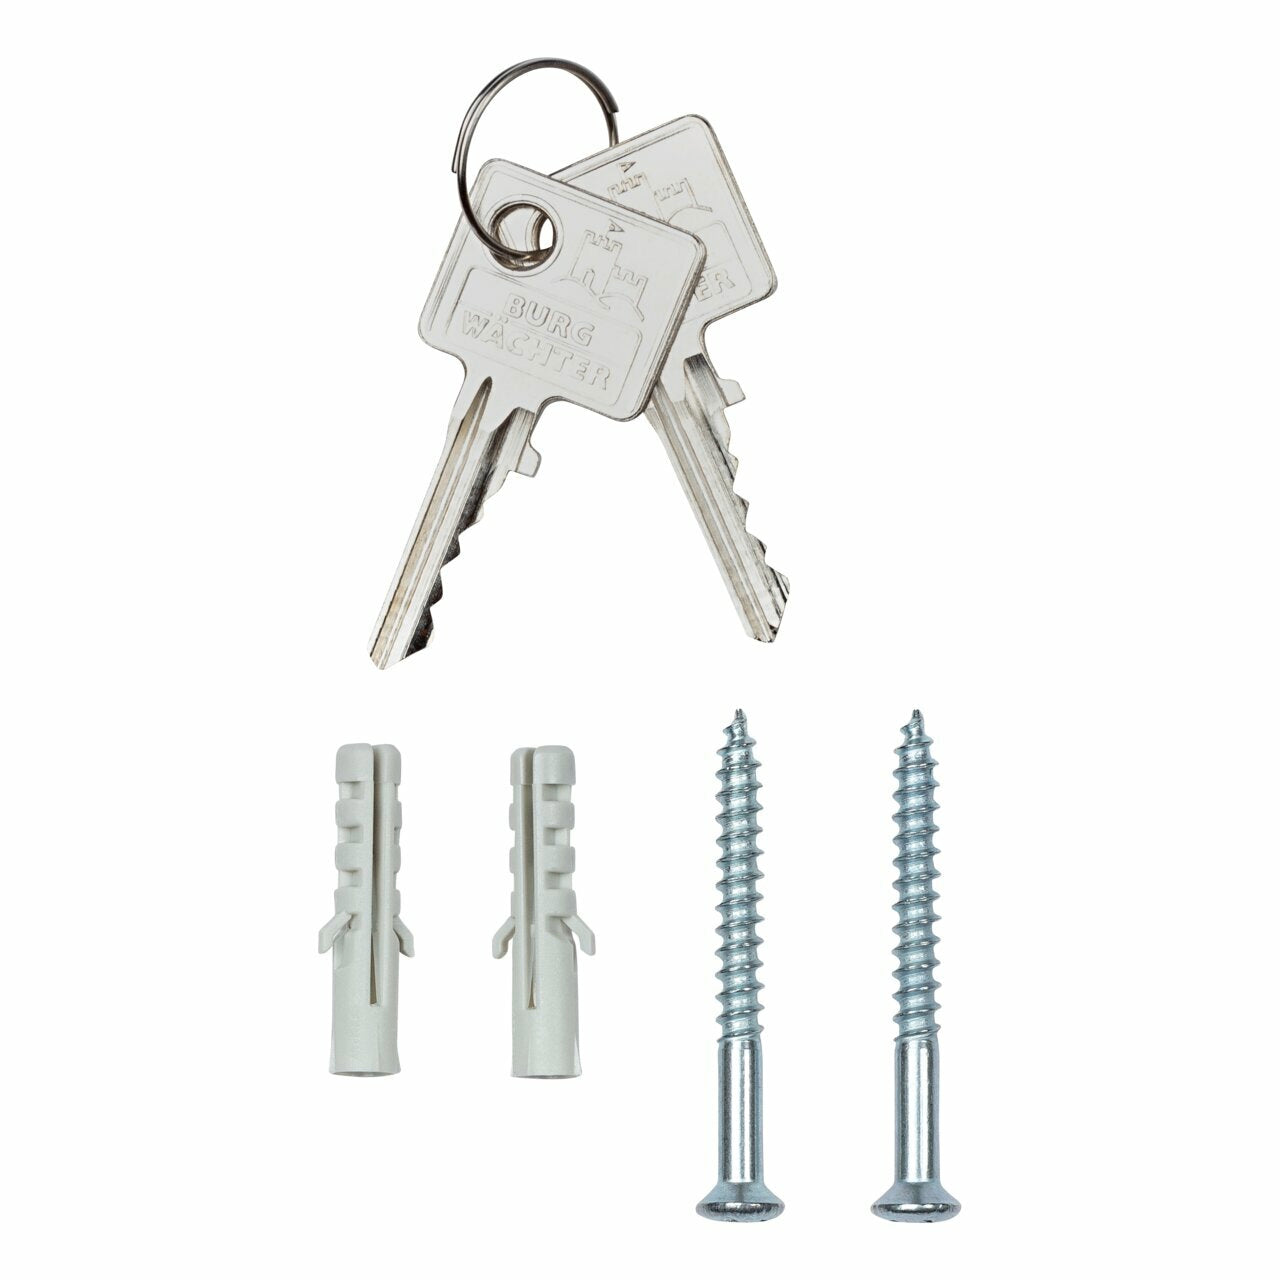 BURG-WÄCHTER Schlüsselbox Key Box | Mit bis zu 35 Haken